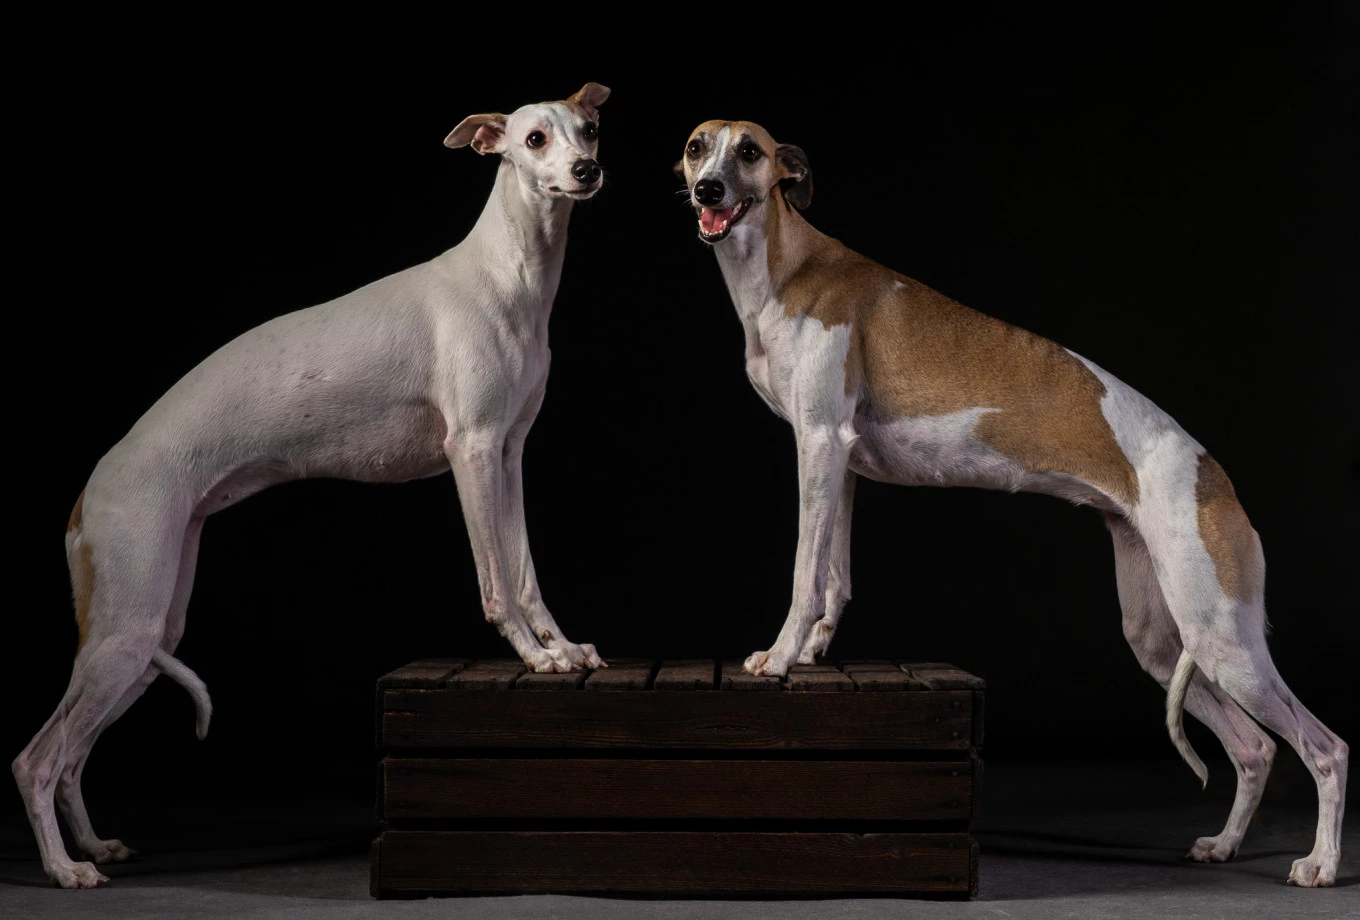 fotograf krakow inoinu portfolio zdjecia zdjecia zwierzat sesja zdjeciowa konie psy koty